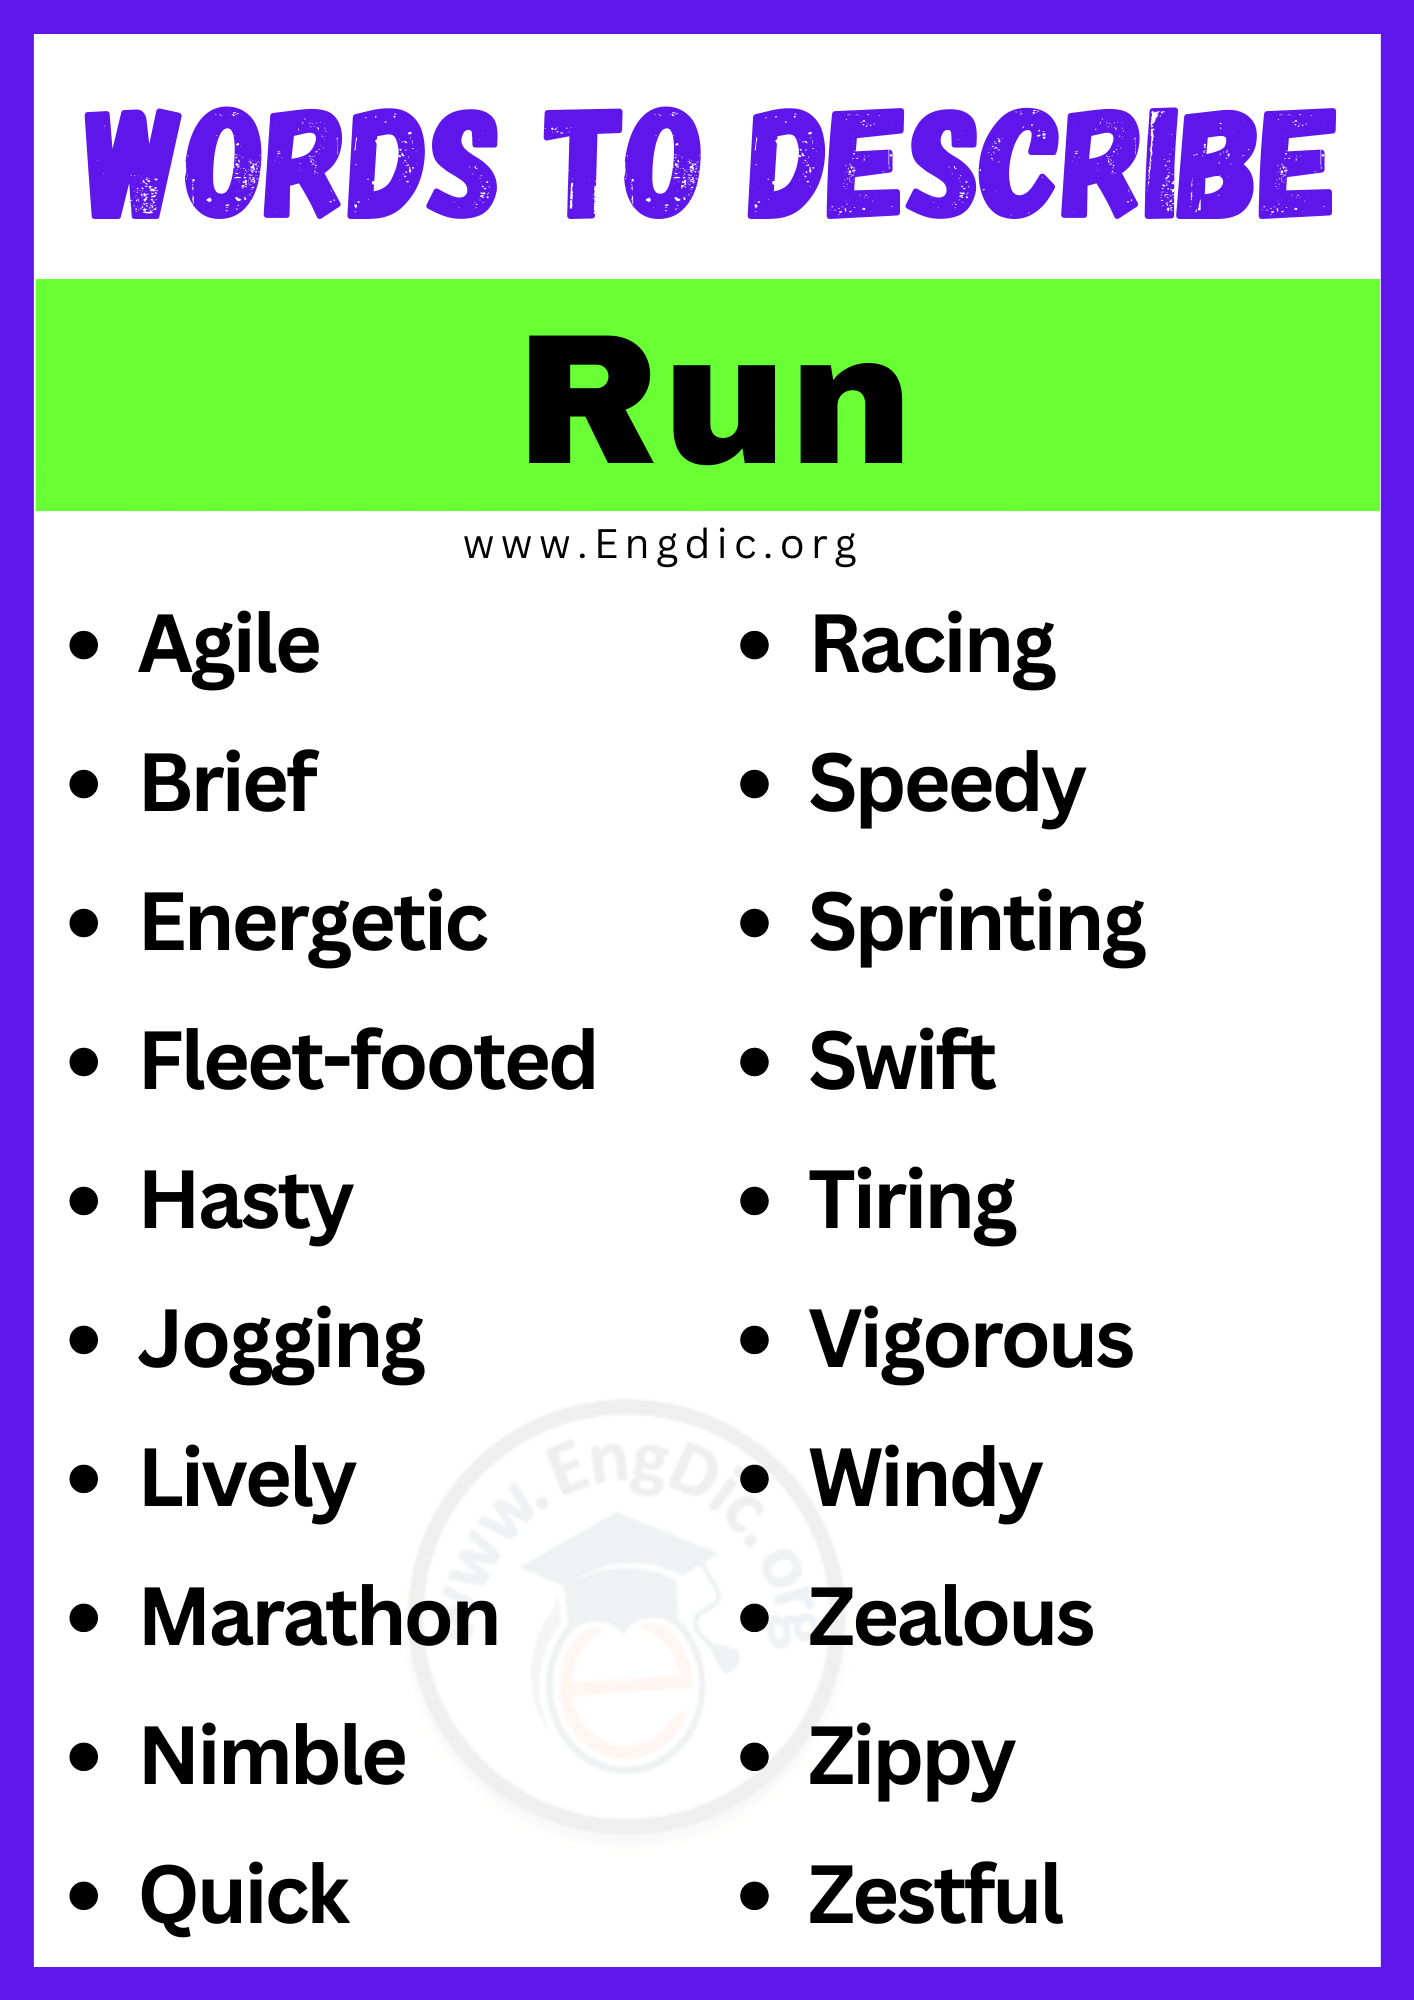 Words to Describe Run